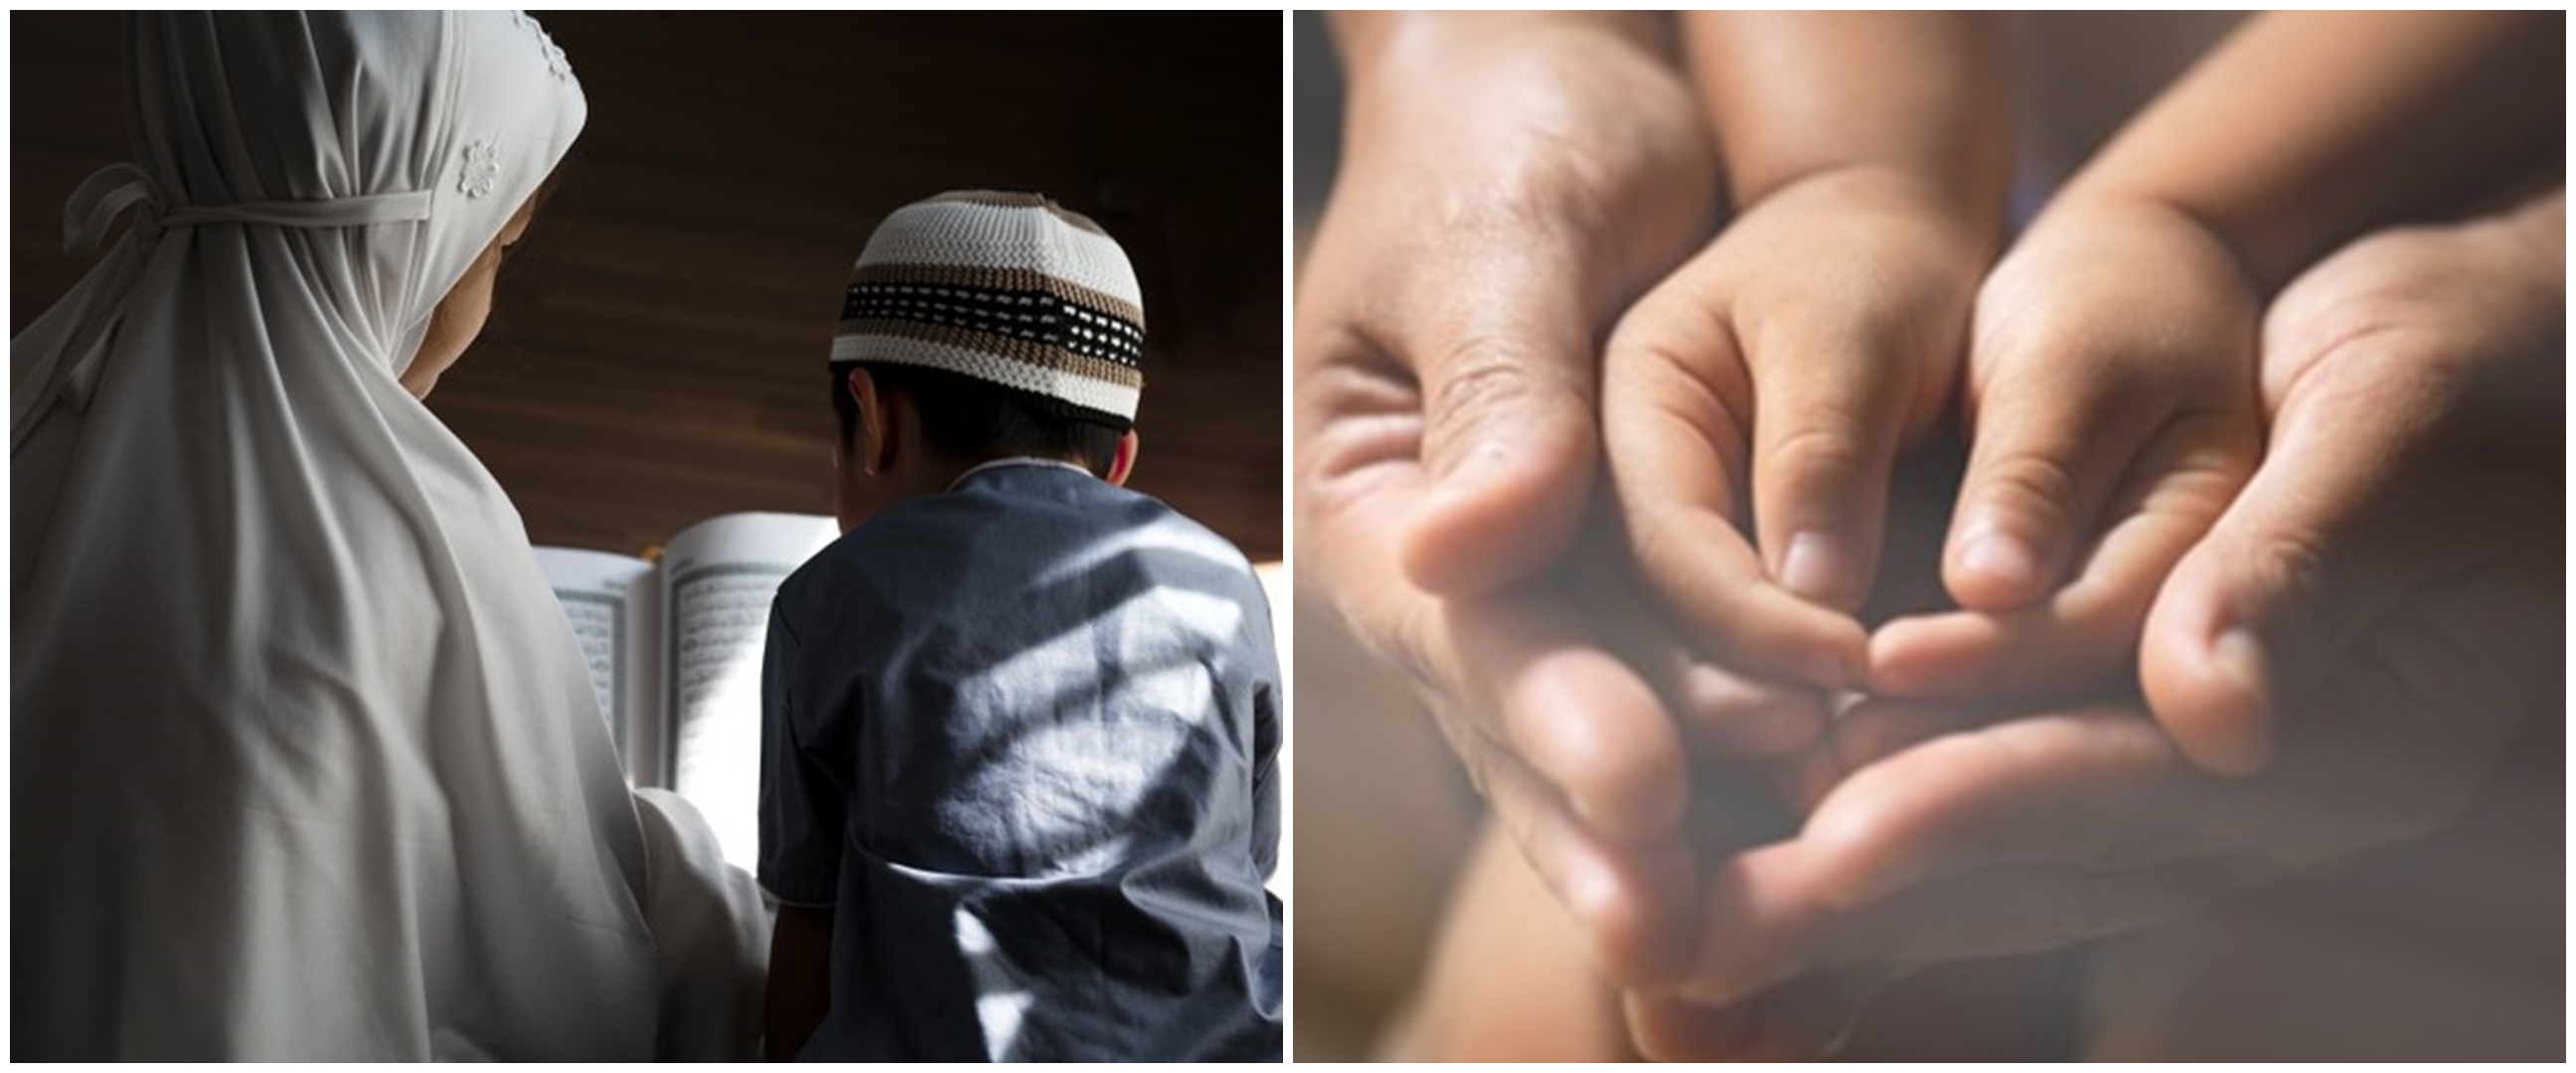 50 Kata-kata motivasi Islami tentang kehidupan yang menyentuh hati